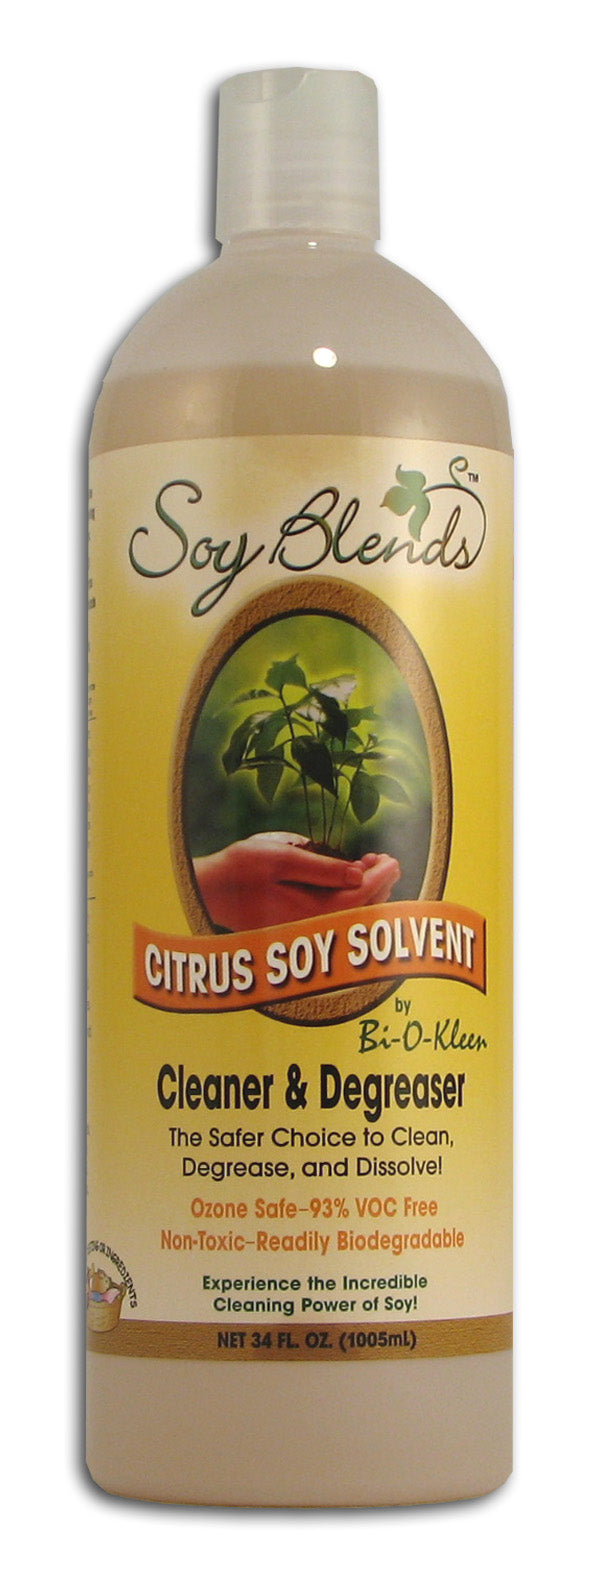 Swix Citrus Solvent Base Cleaner, $27.50